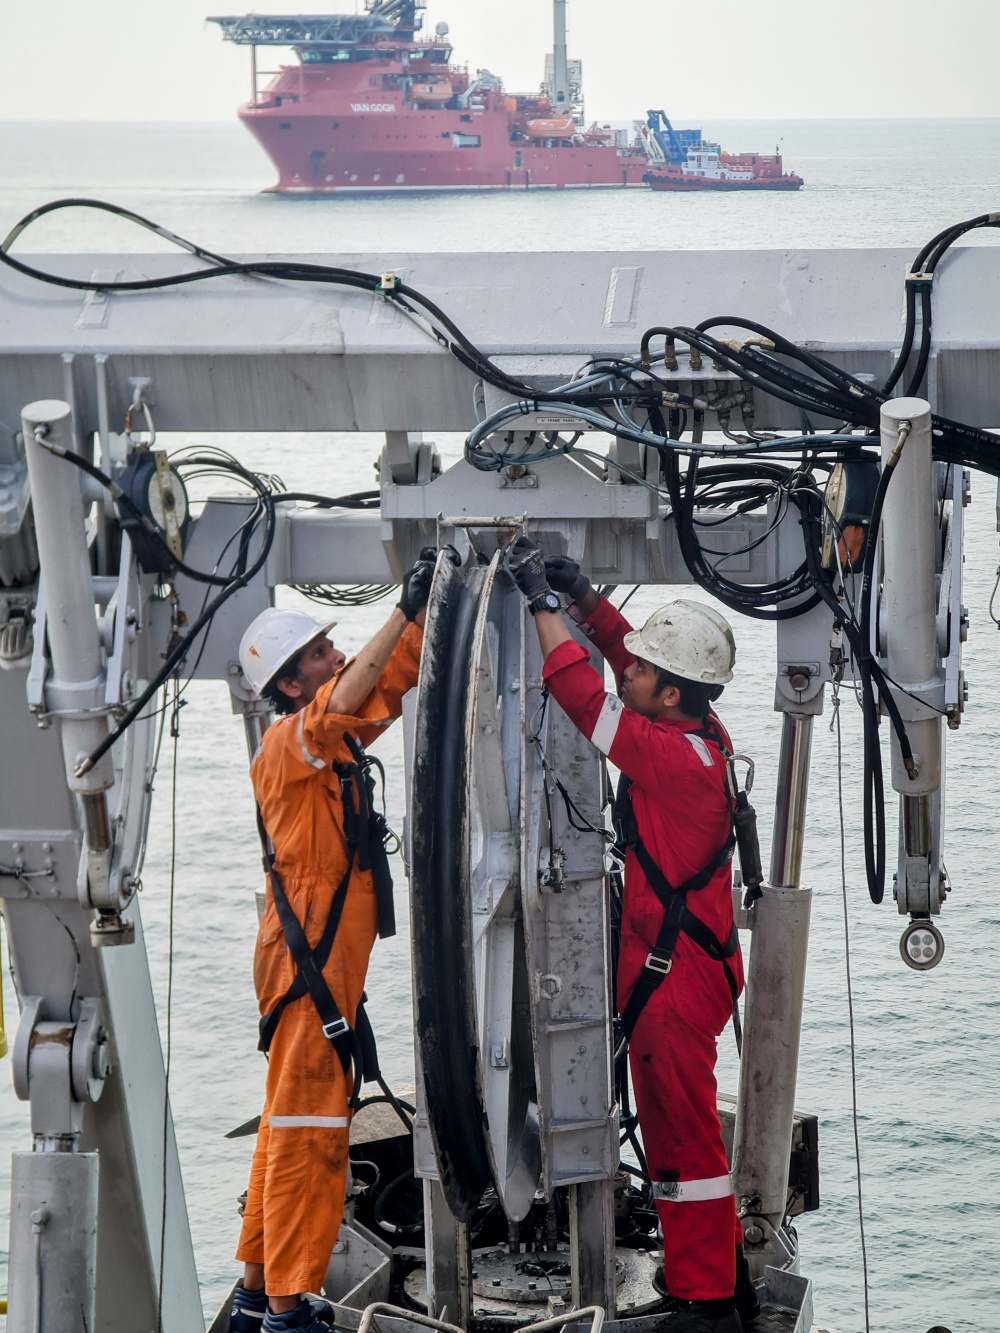 20-TNT-AB-0004-07: Hai kỹ thuật viên đang bảo trì hệ thống Rô-bốt lặn (ROV) cho tàu Crest Odyssey 1, một cuộc hội ngộ tình cờ với tàu phía đằng xa Van Gogh - một tàu khác cũng được PTSC Offshore Service sử dụng cho dự án thu hồi đường ống và kết cấu tại V